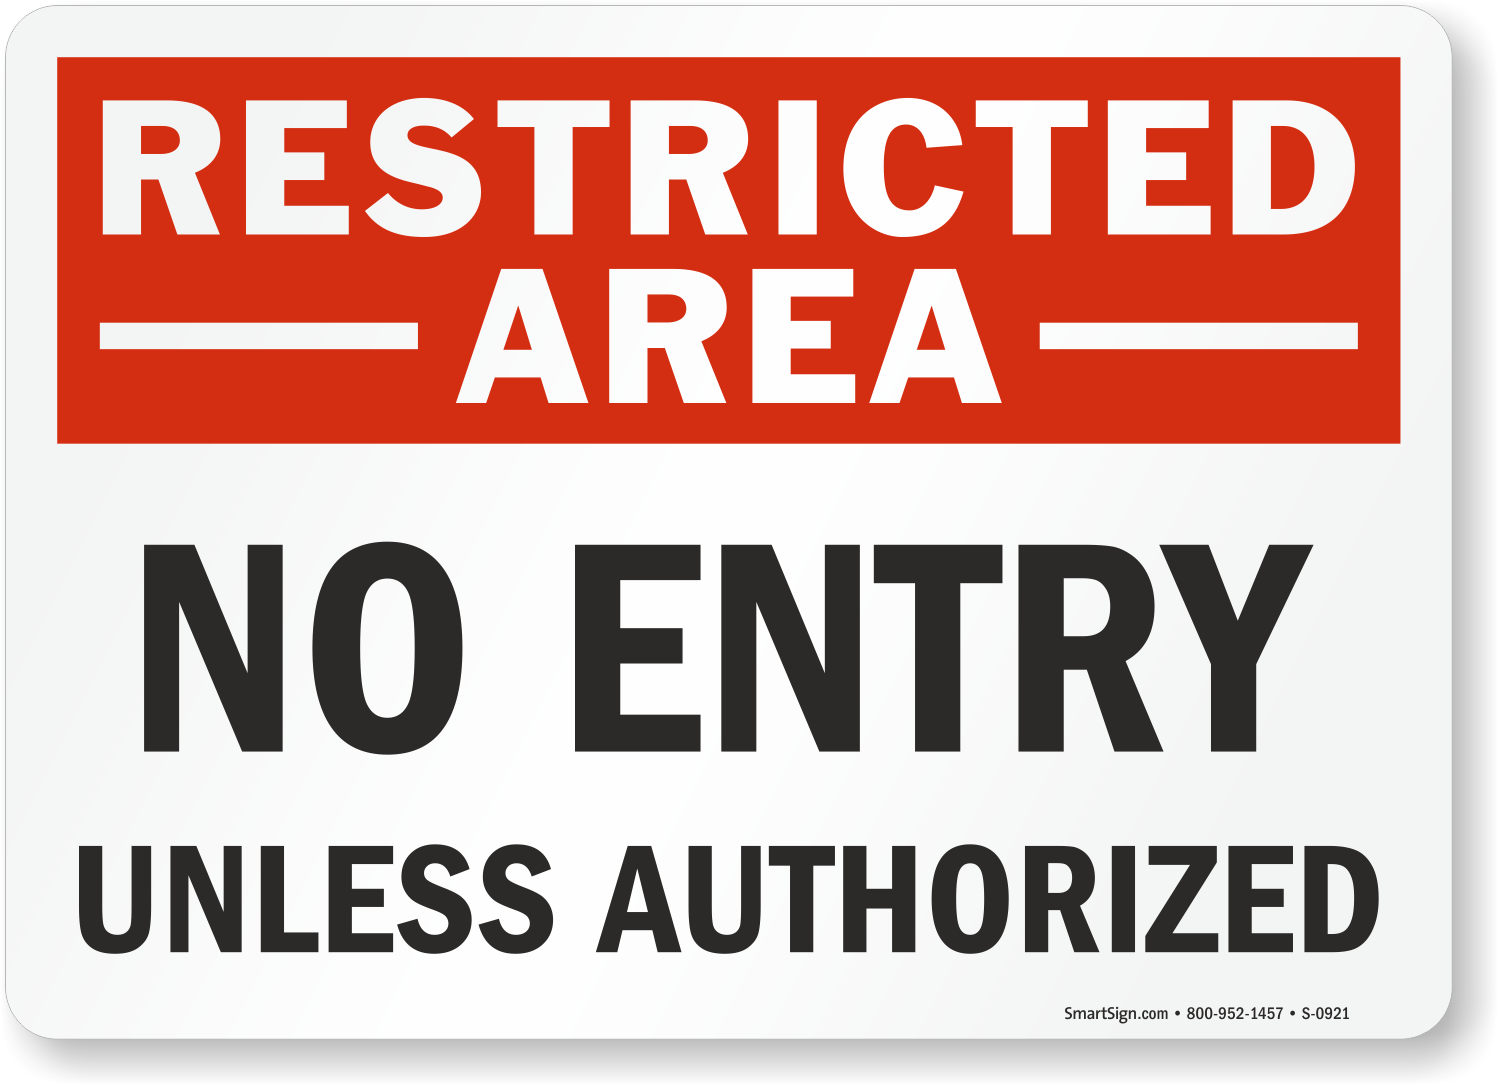 Restricted area. Warning restricted area. Restricted area sign. Предупреждение на английском.